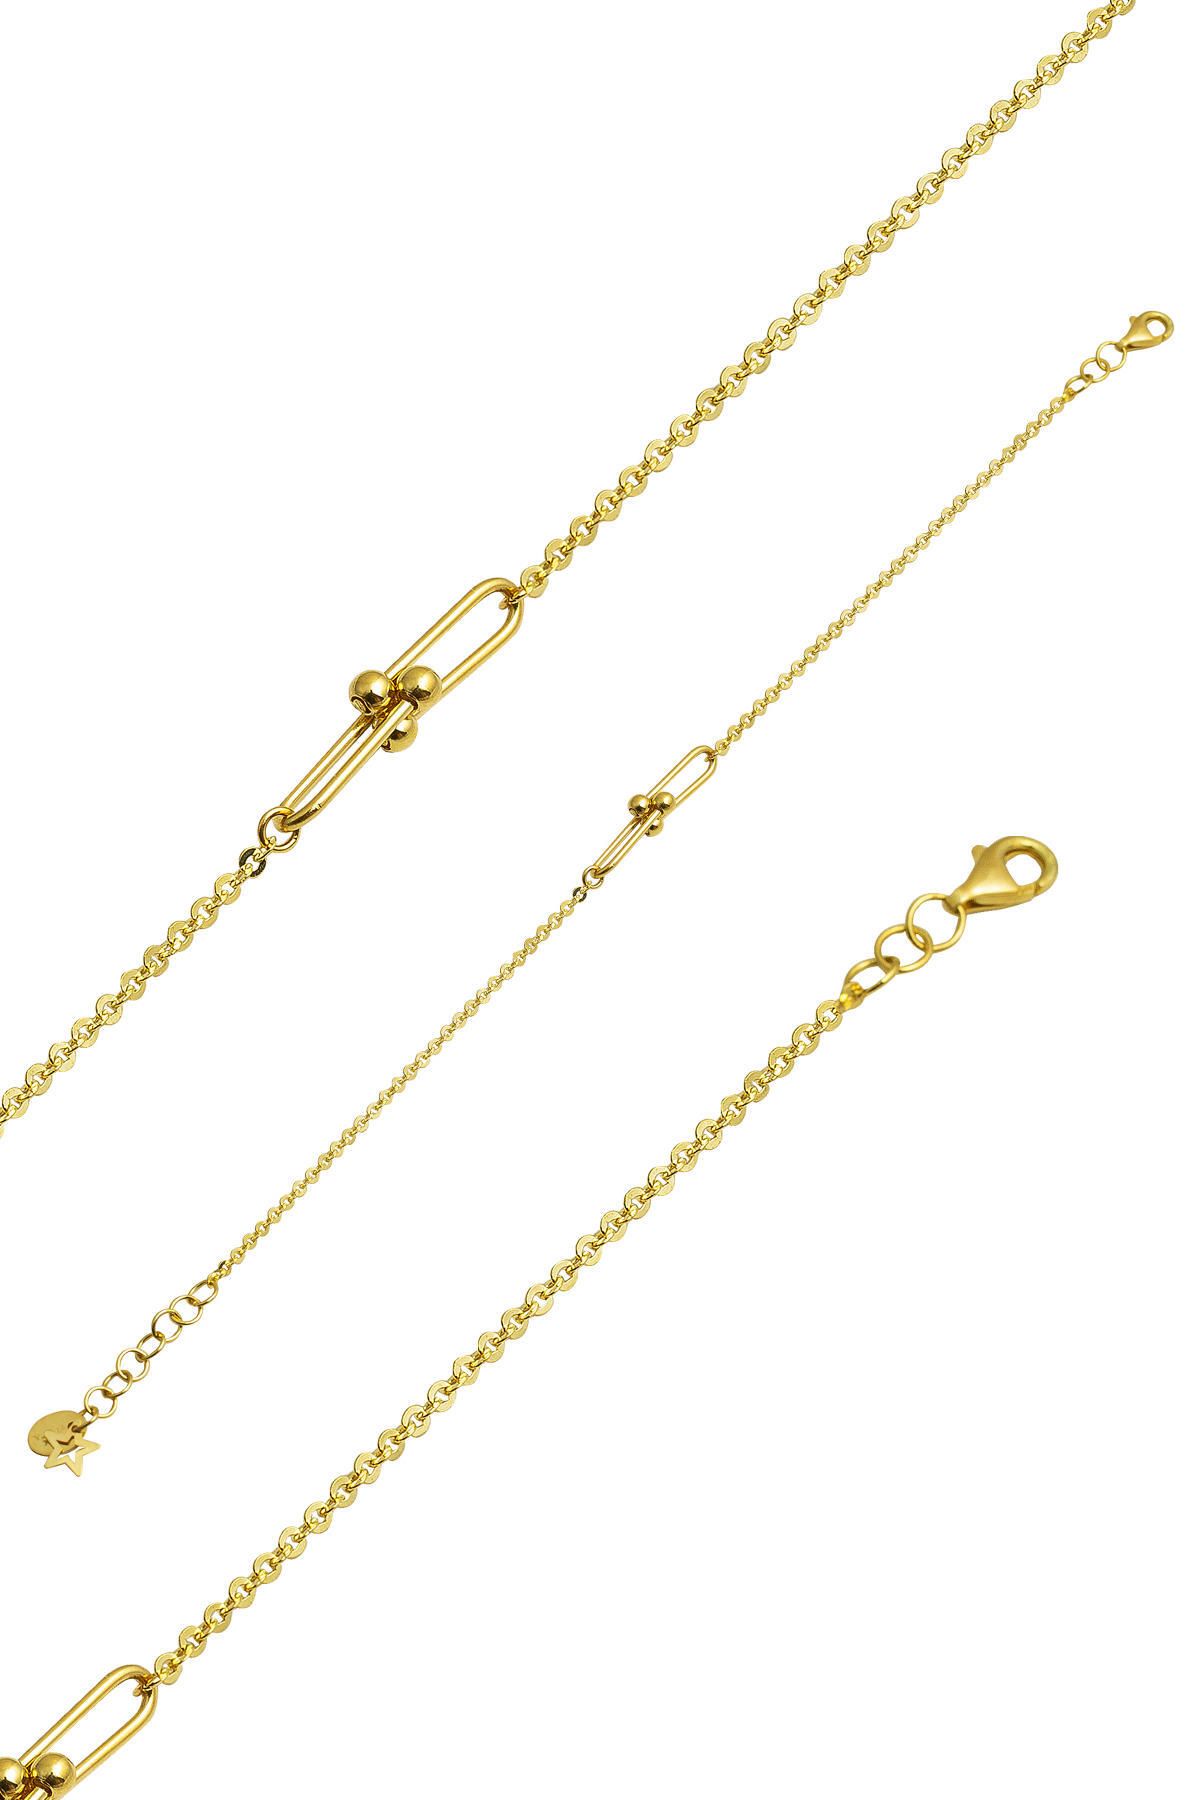 Bilezikci Tiffany Halka Altın Zincir Bileklik